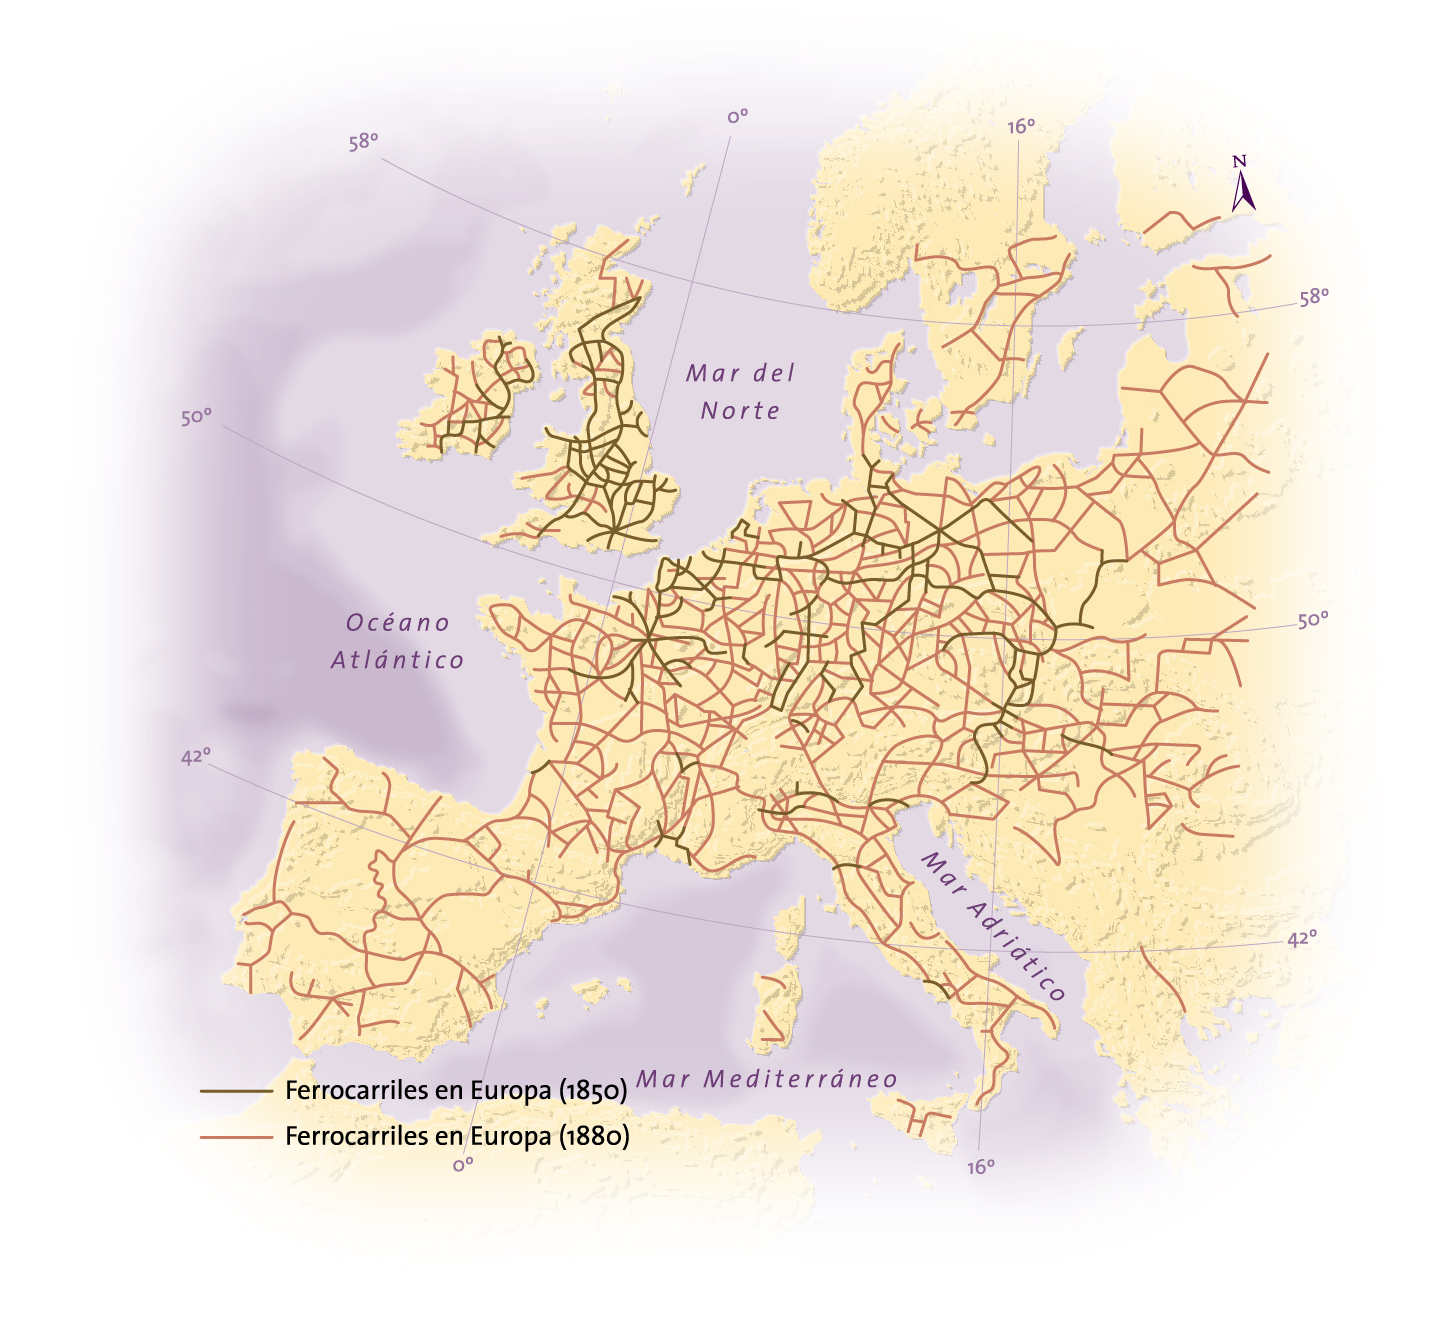 La expansión de la red ferroviaria europea: 1850-1880